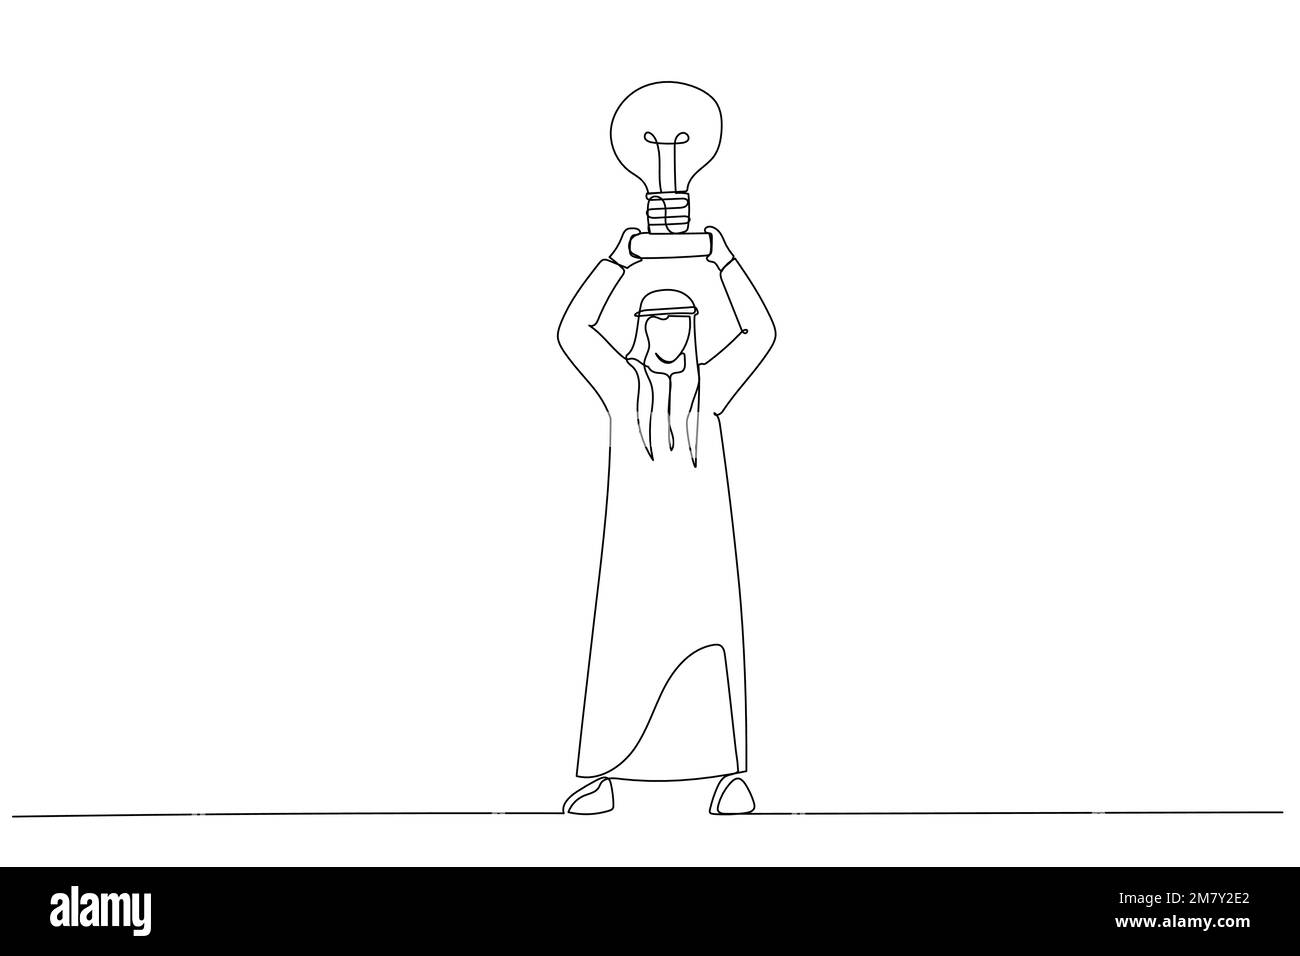 Darstellung arabischer Geschäftsmännerhände nimmt einen Trophäenbecher, der wie eine Glühbirne auf einem Sockel aussieht. Einzeiliges Design im Art-Stil Stock Vektor